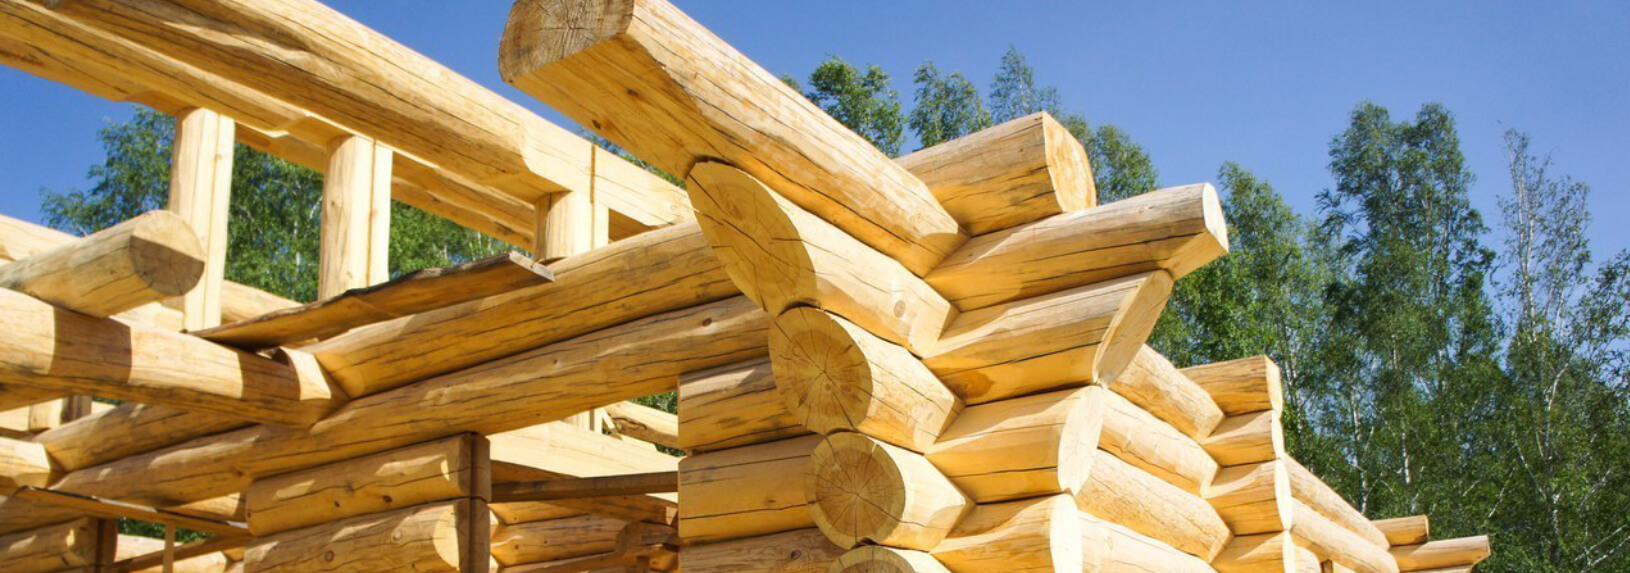 Статьи про строительство деревянных домов